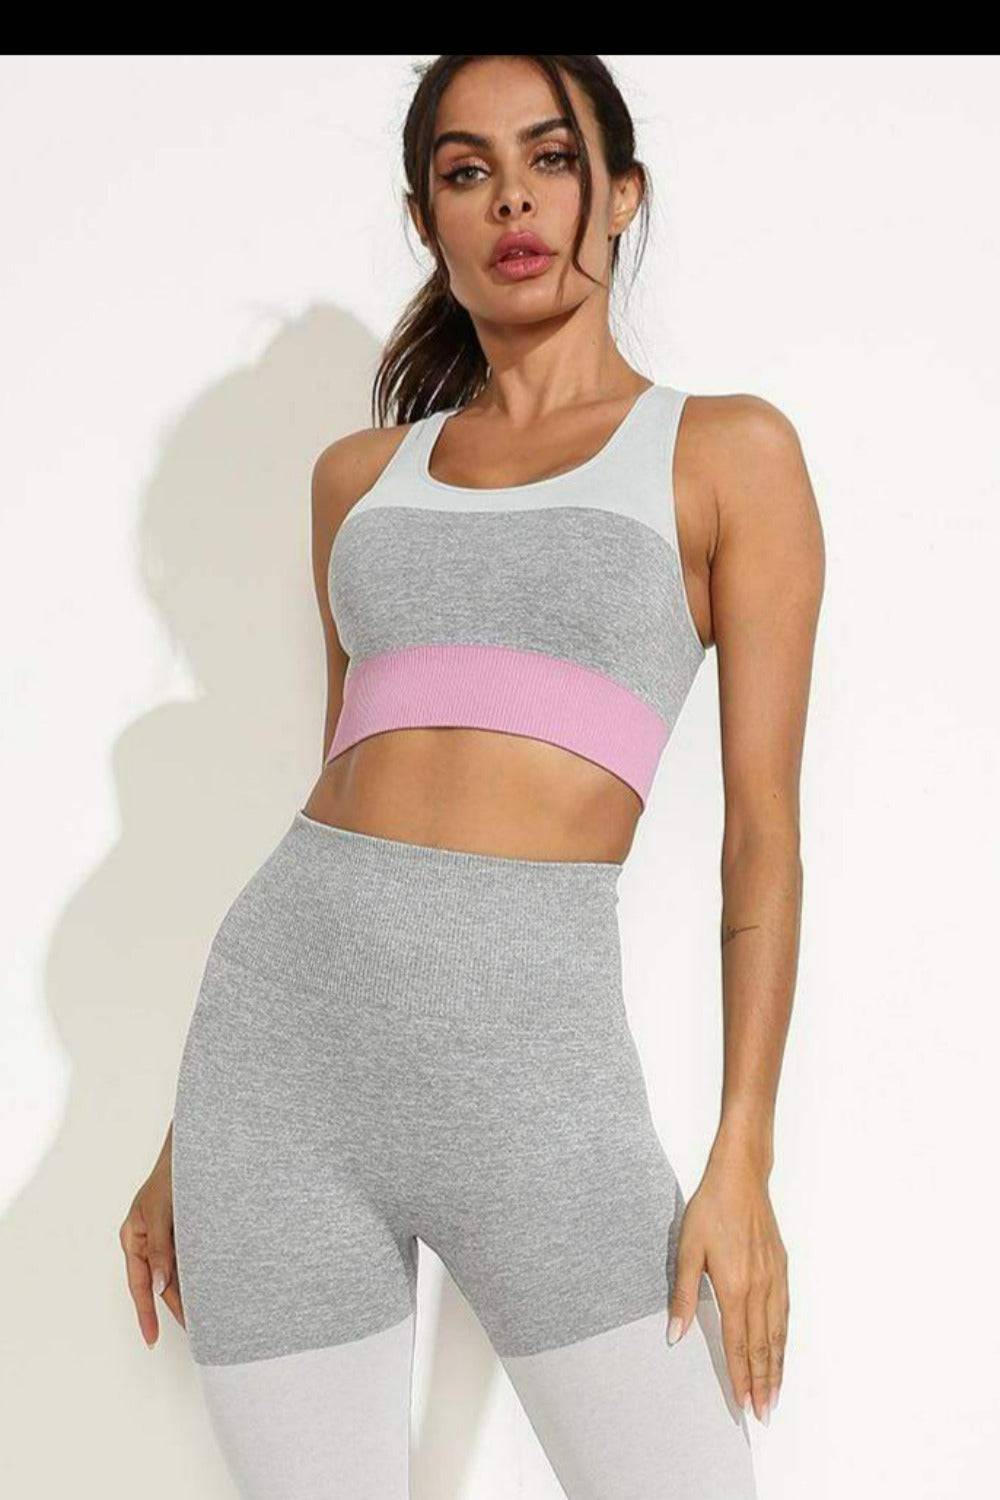 Squat Proof Patchwork Pink Workout Set - TGC Boutique - Activewear